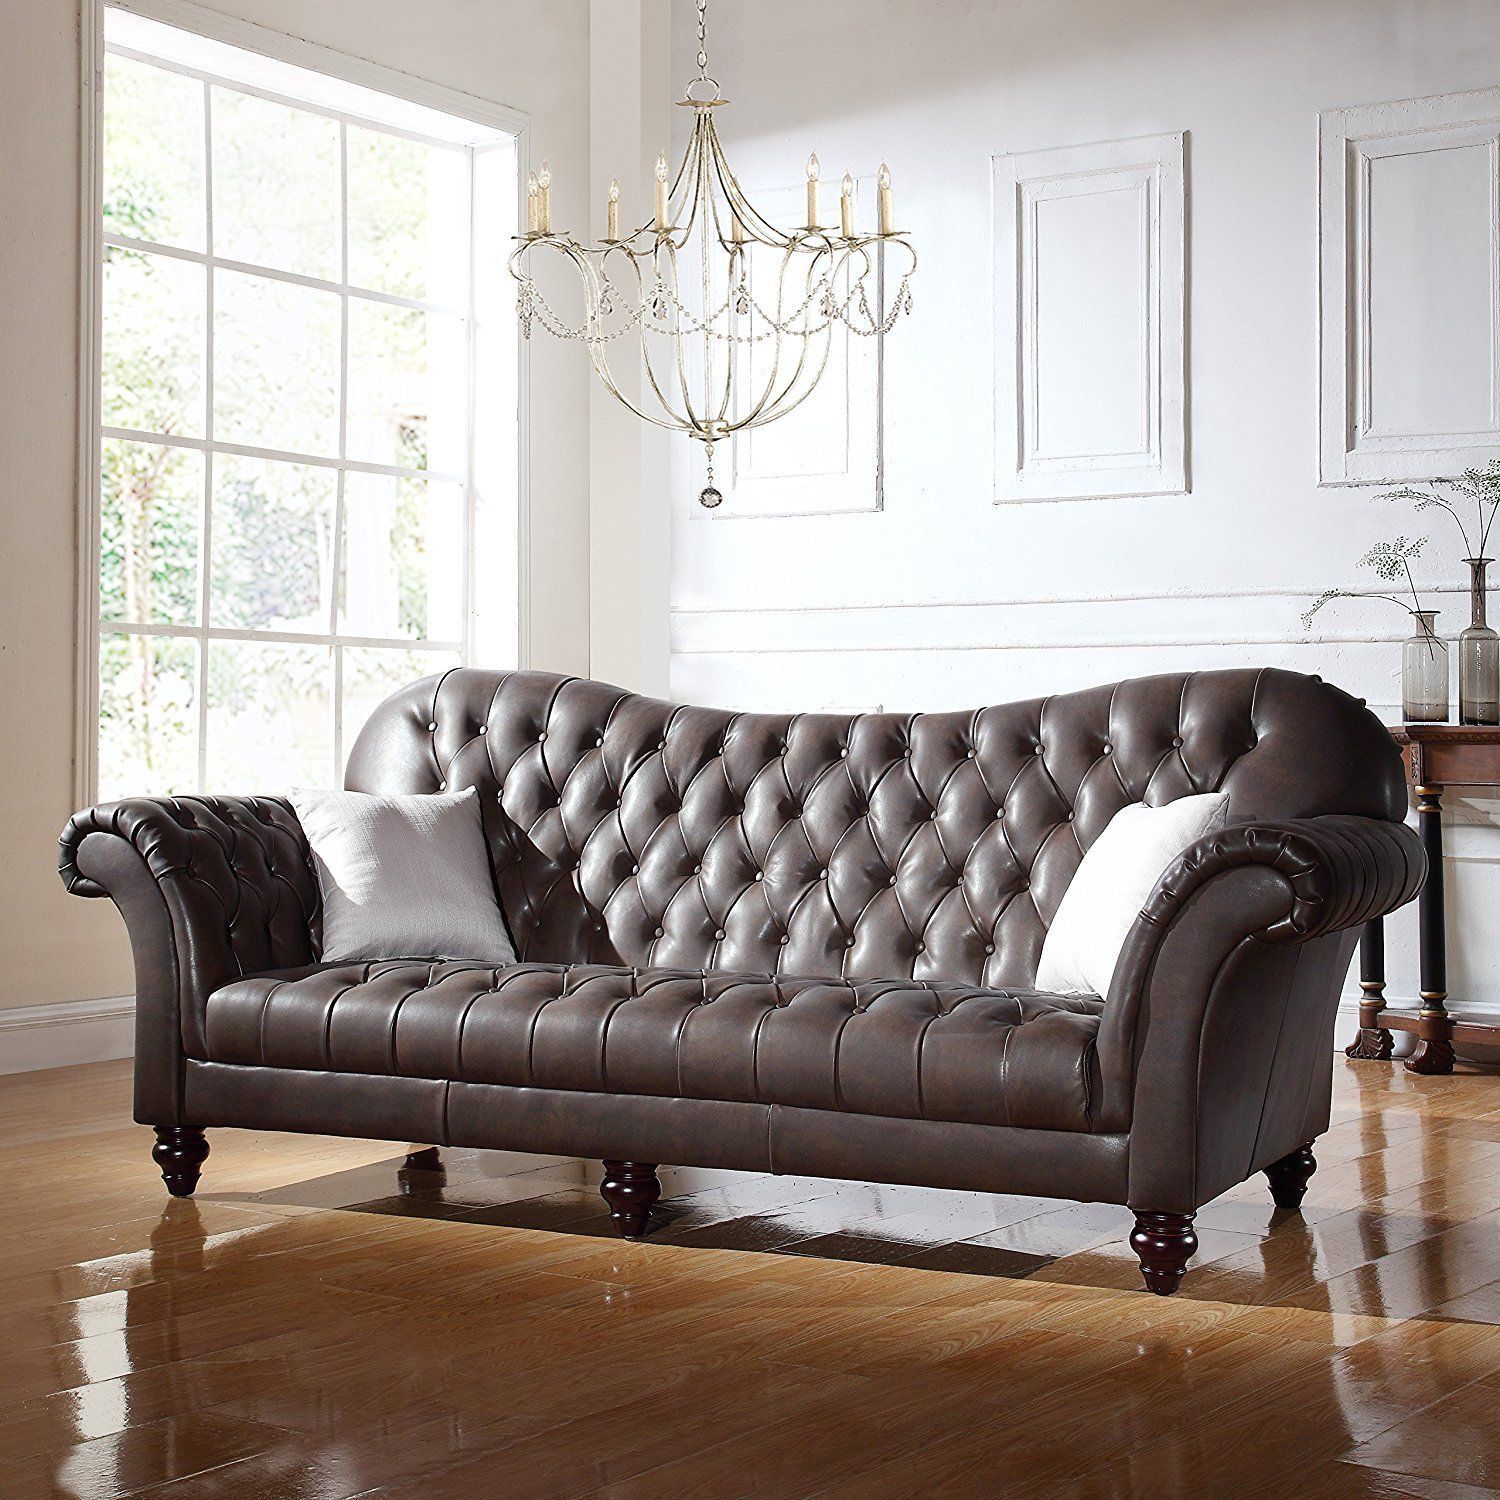 Luxurious Leather Sofas